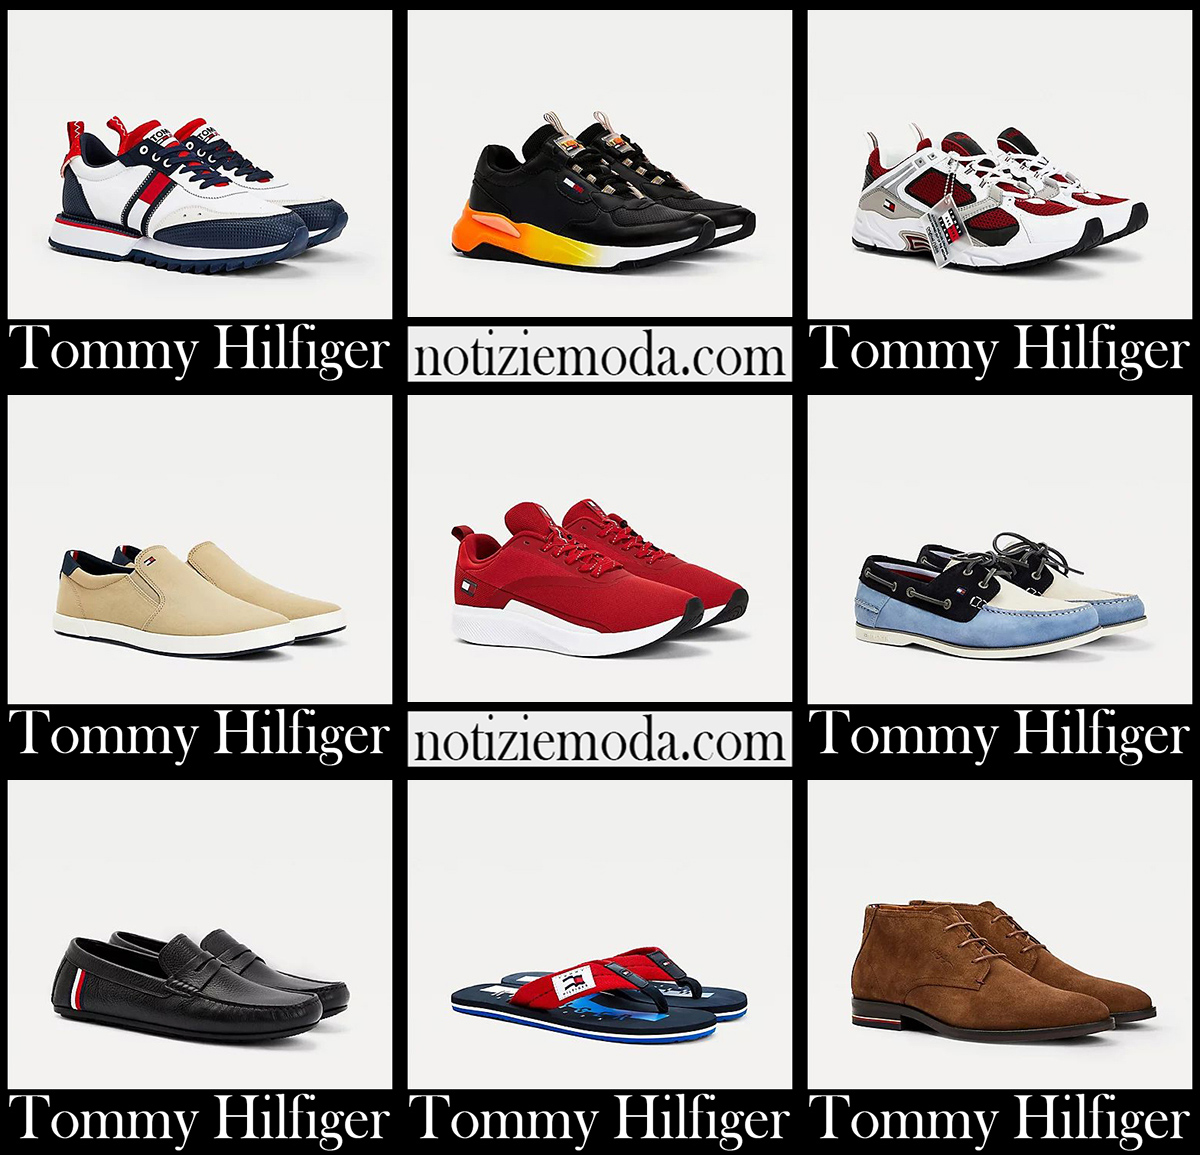 Nuovi arrivi scarpe Tommy Hilfiger 2021 calzature uomo